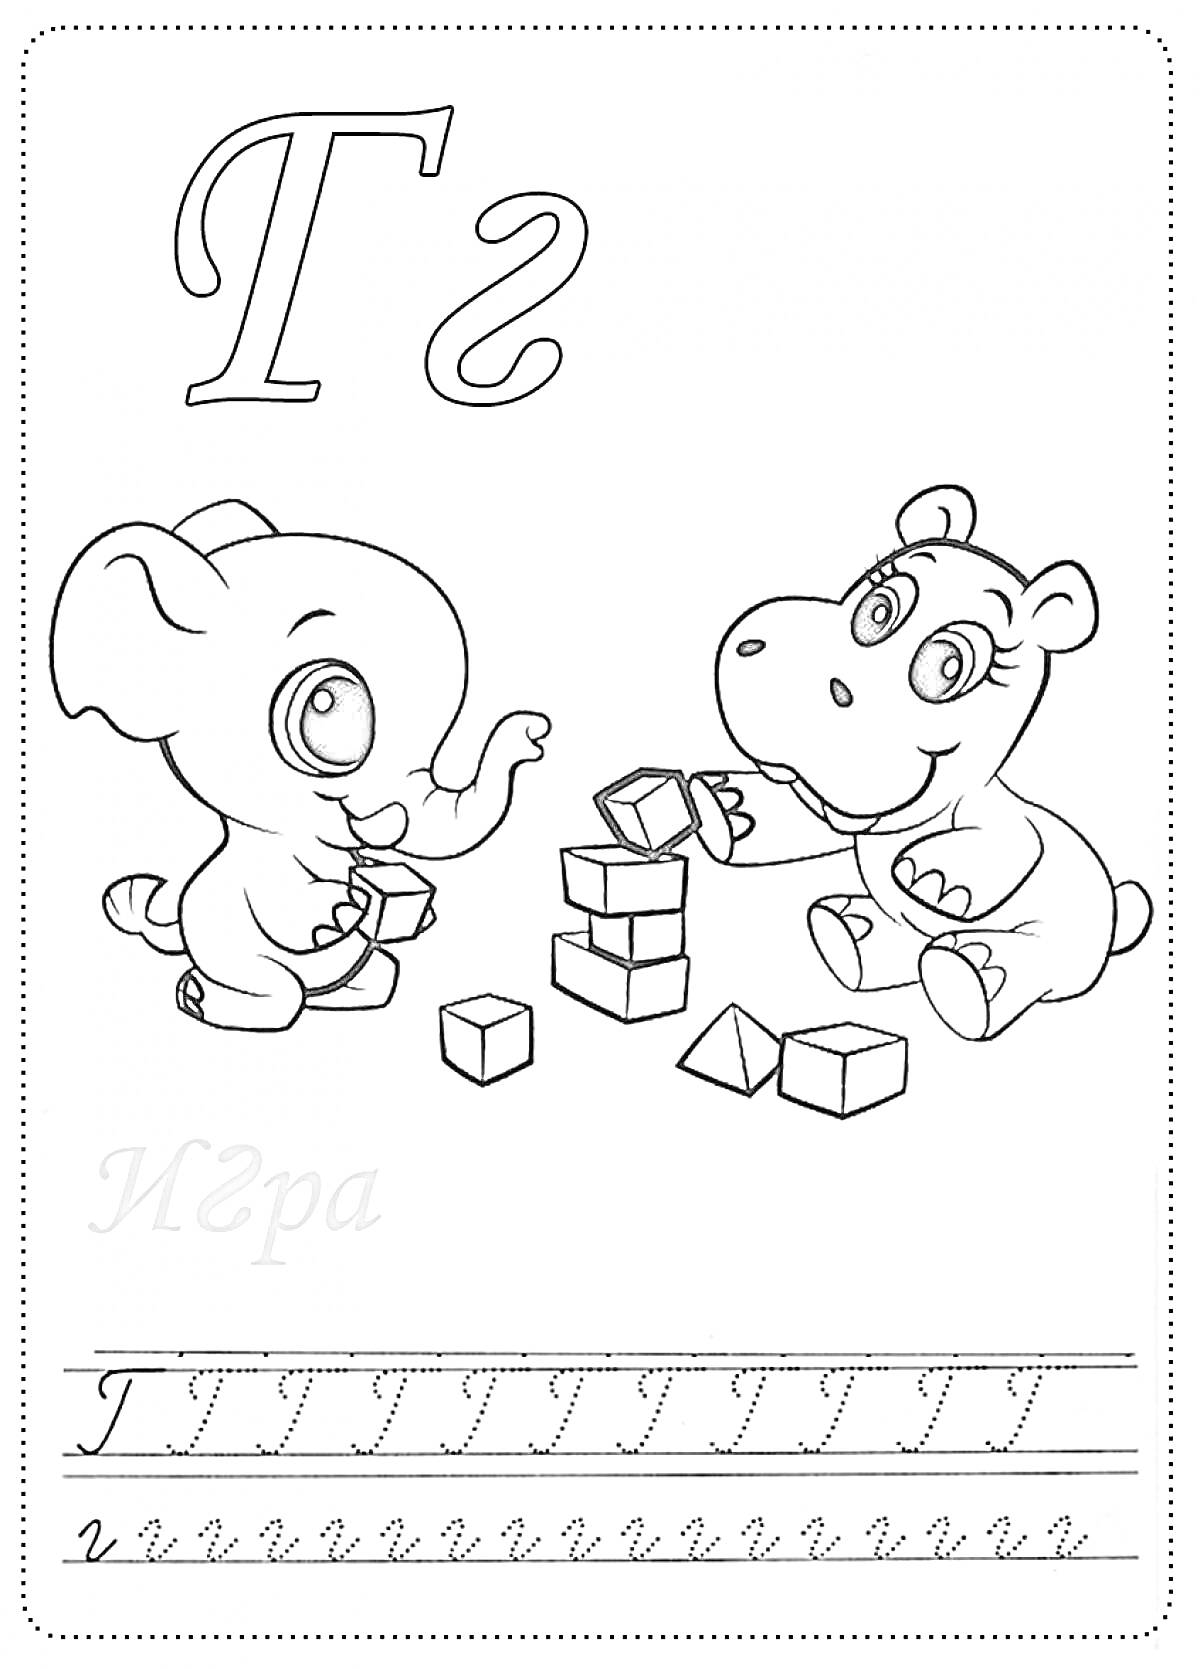 Буква Г, играющие слоник и бегемотик с кубиками, прописи